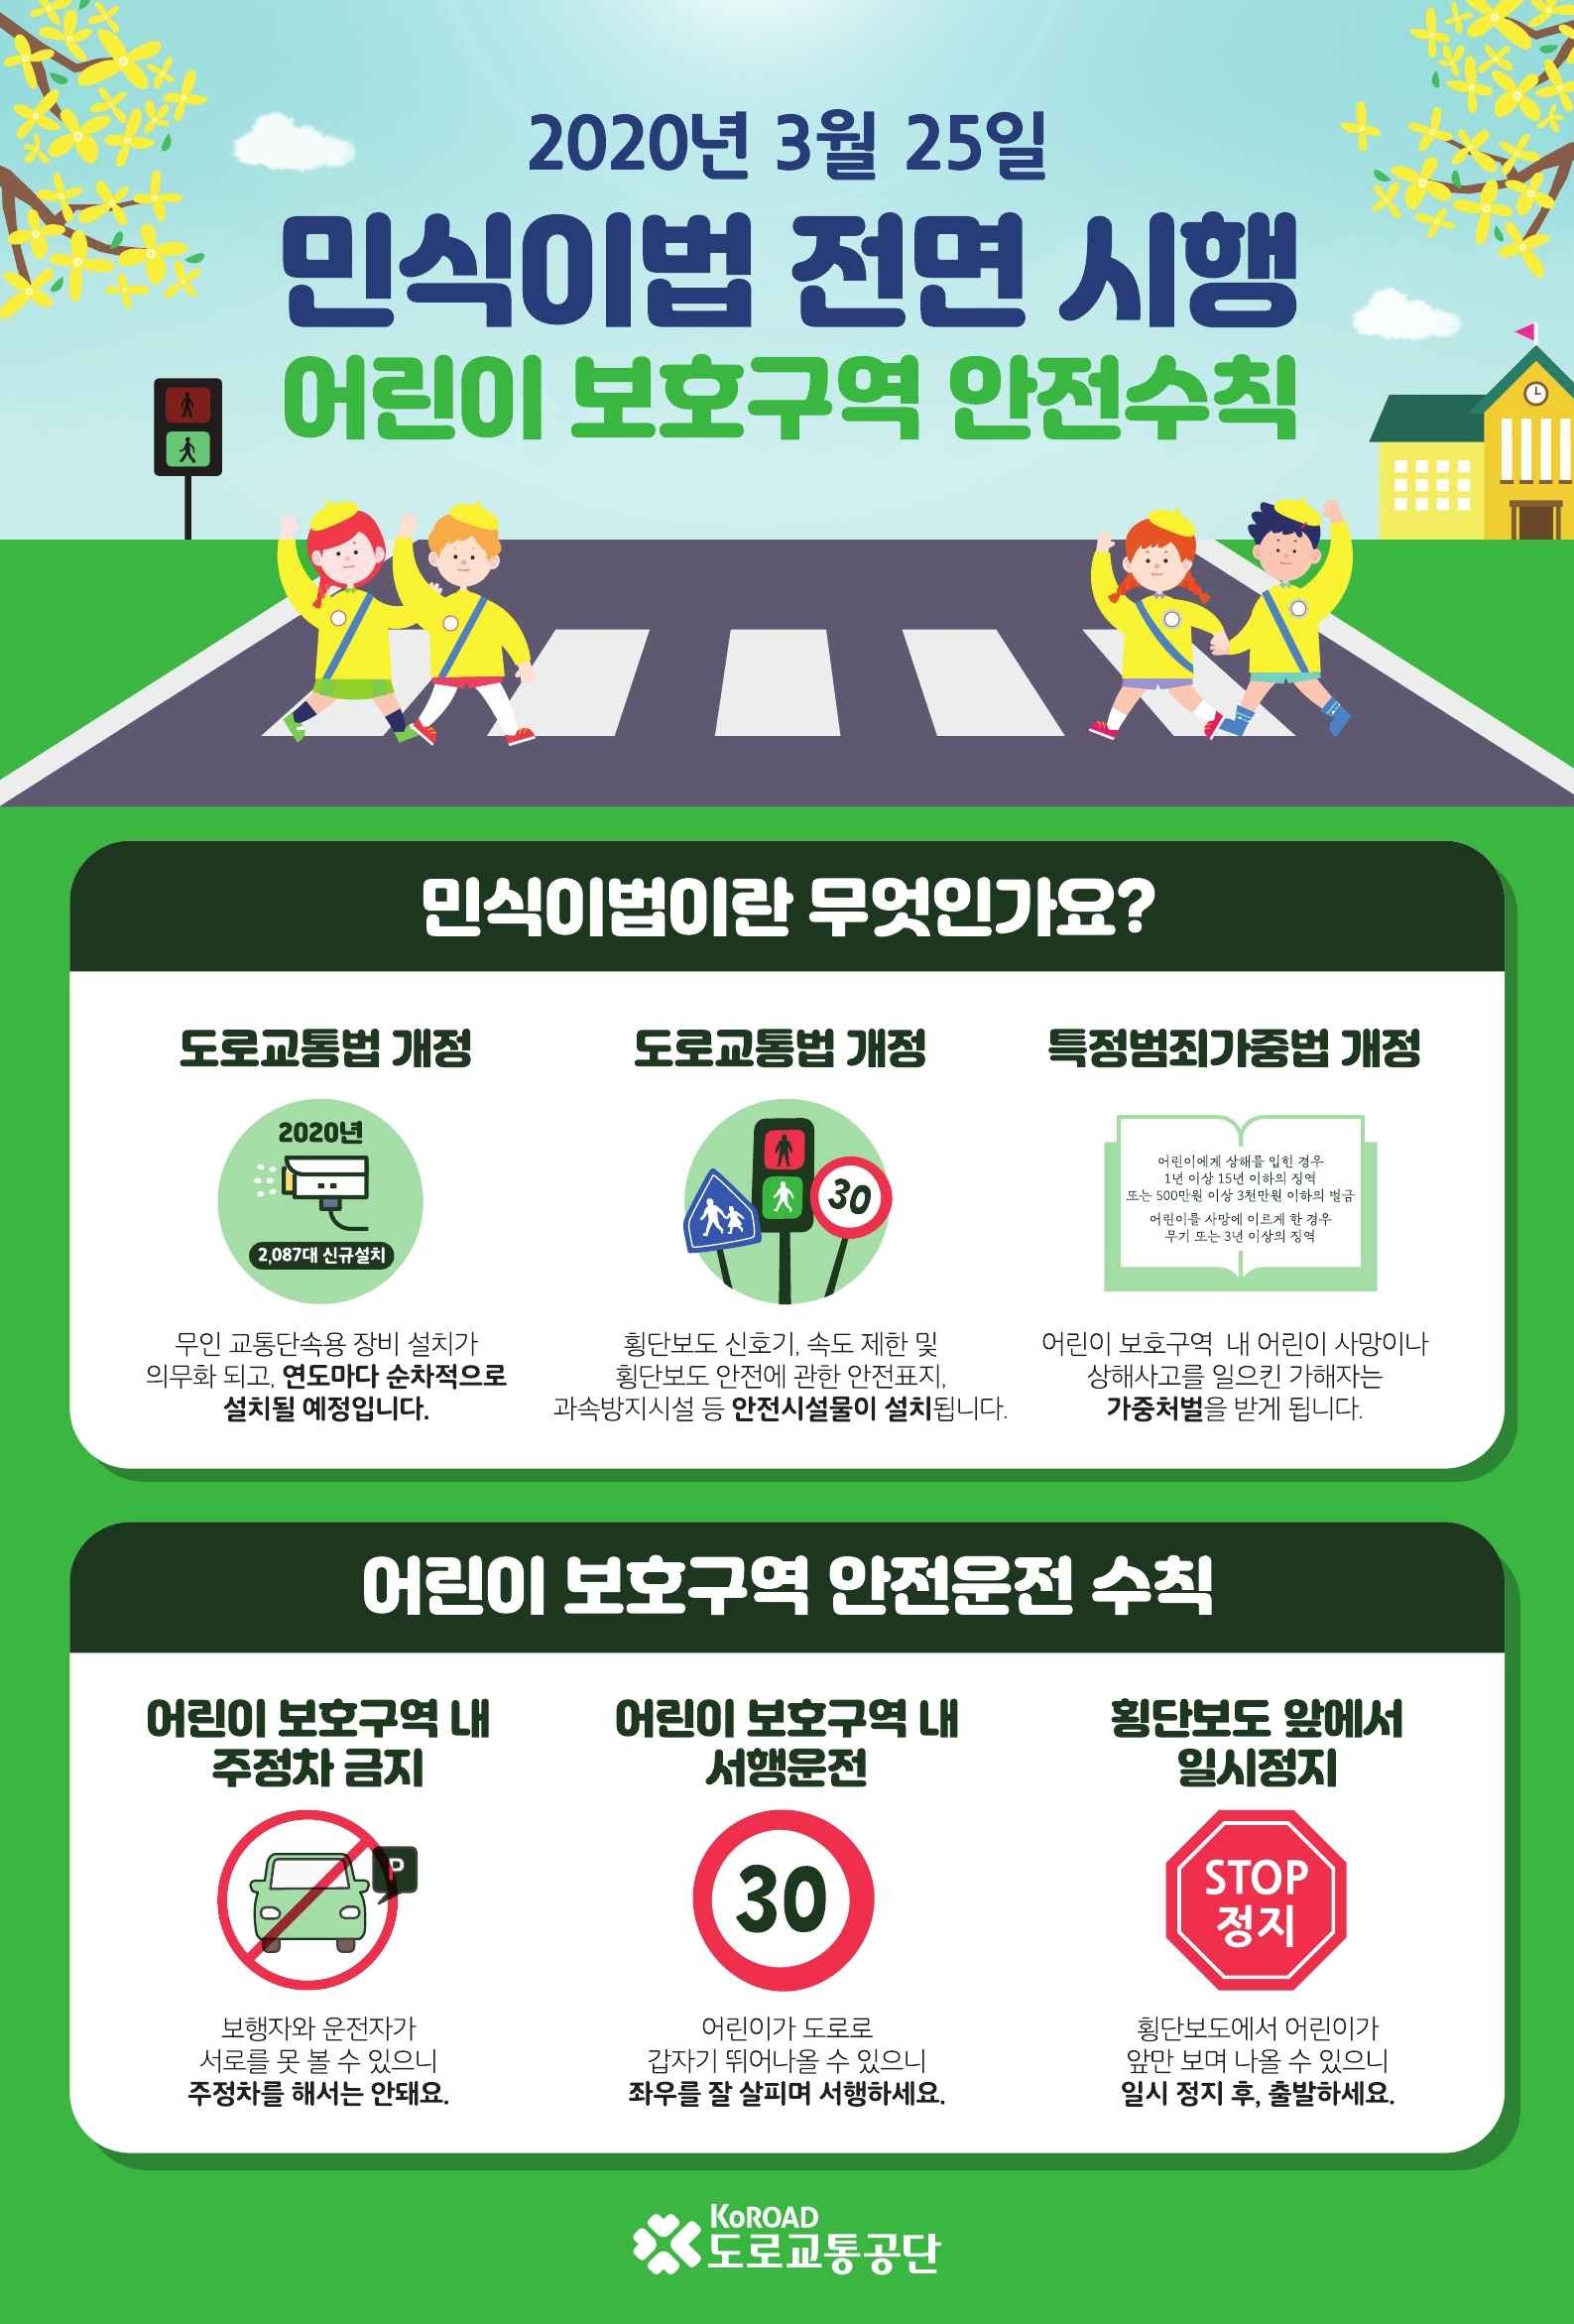 (붙임1) 민식이법 홍보 포스터(도로교통공단)